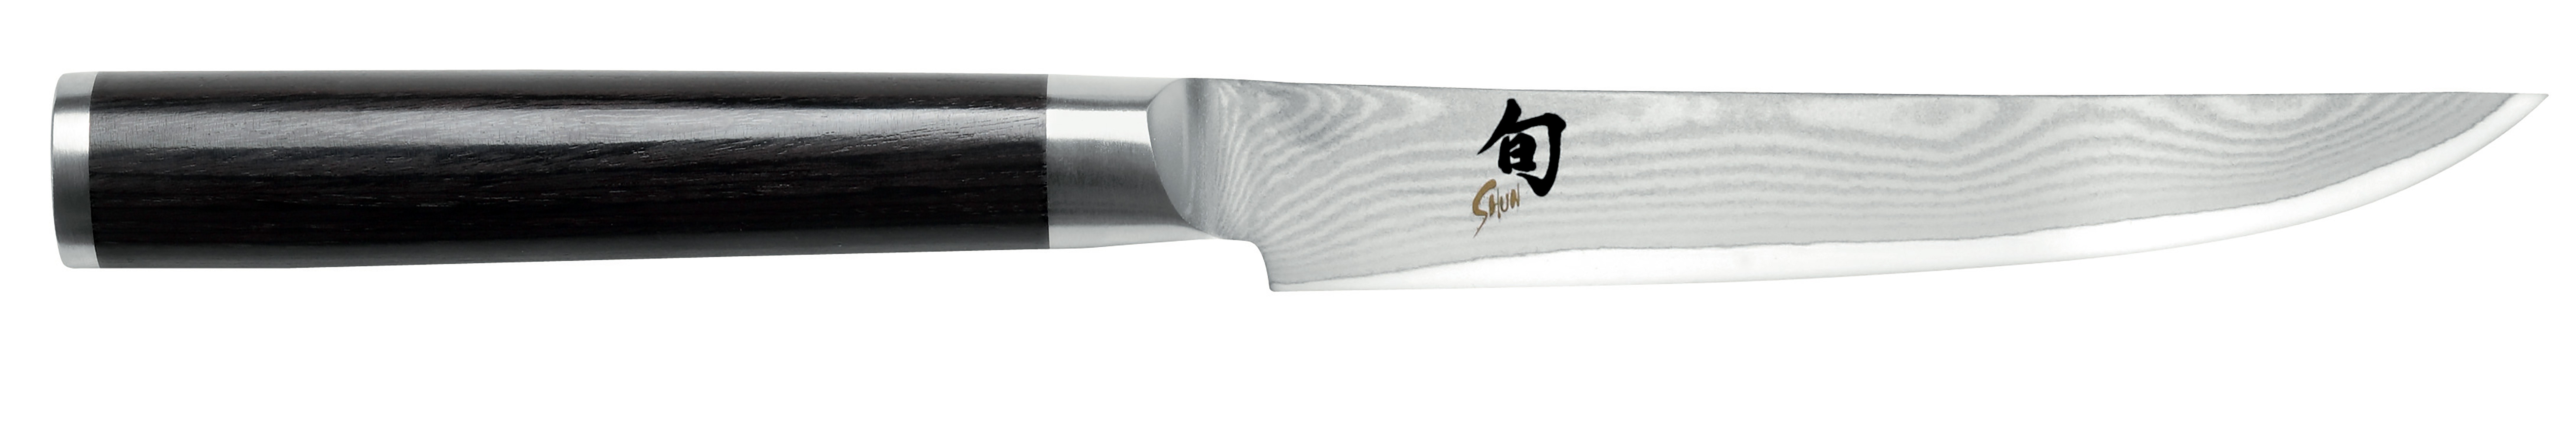 KAI SHUN CLASSIC Steakmesser 12cm